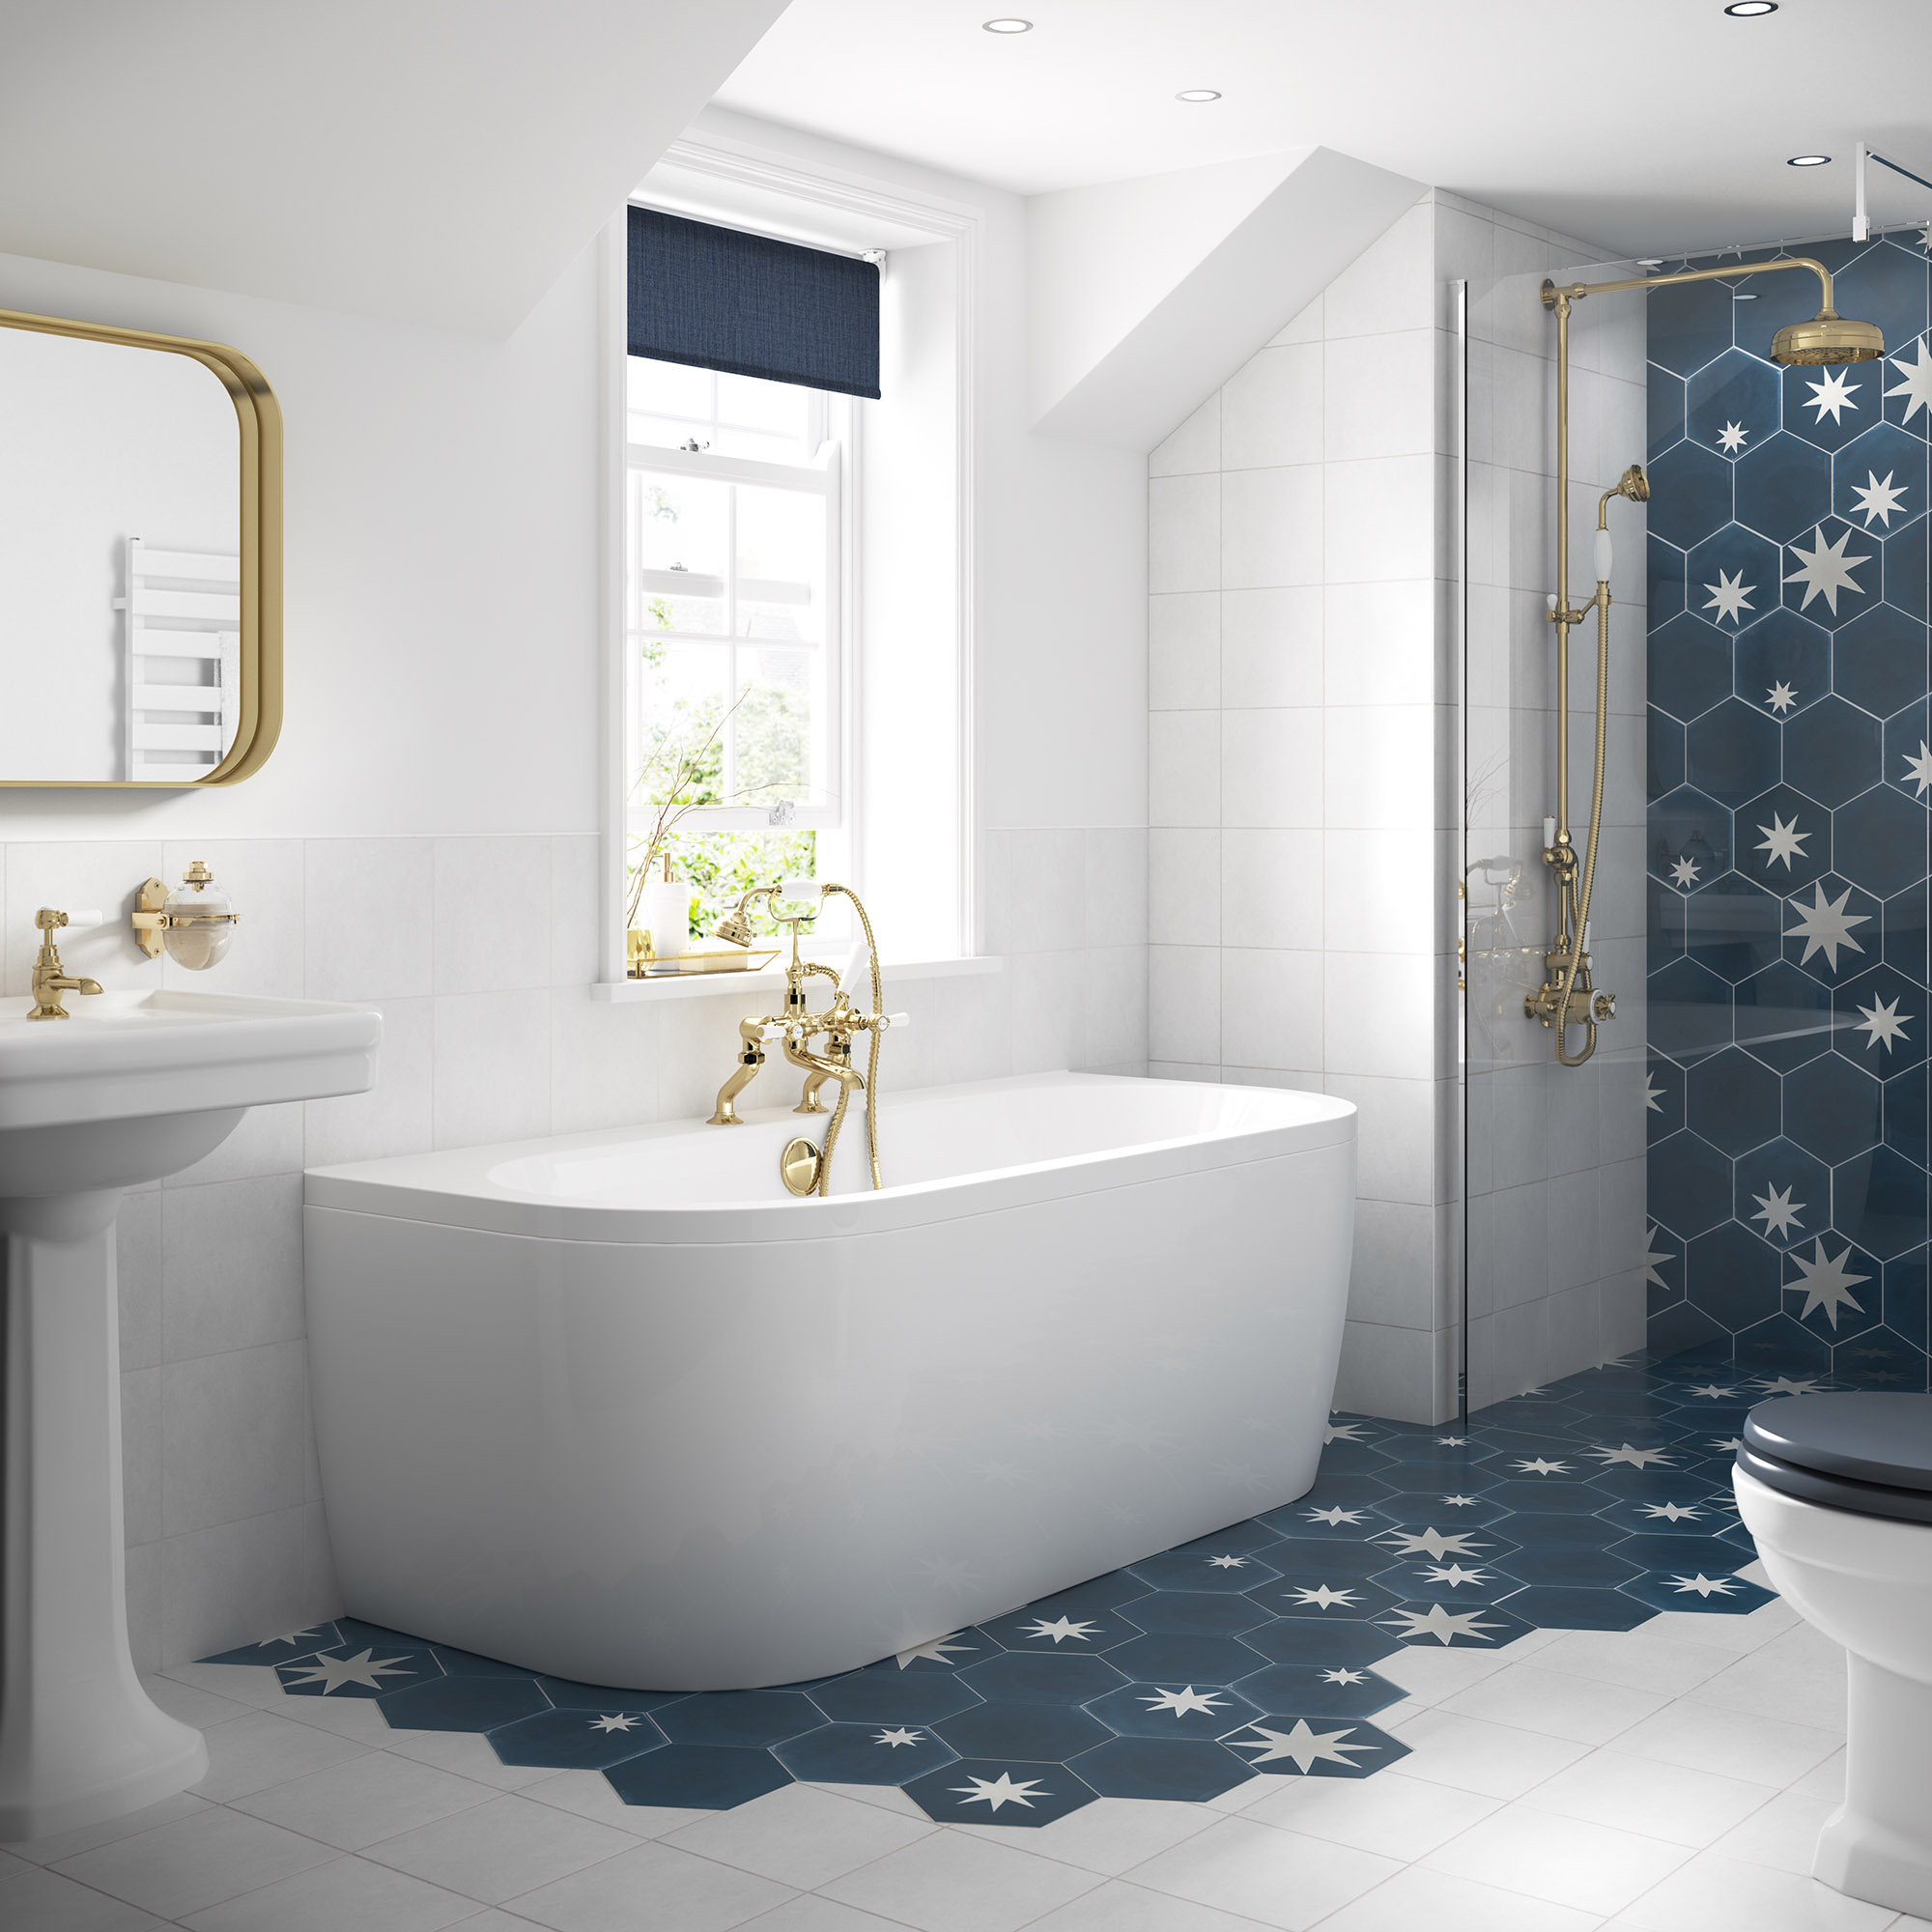 Moderno cuarto de baño con bañera exenta de espaldas a la pared y azulejos con diseño de estrella que pasan del suelo a la pared